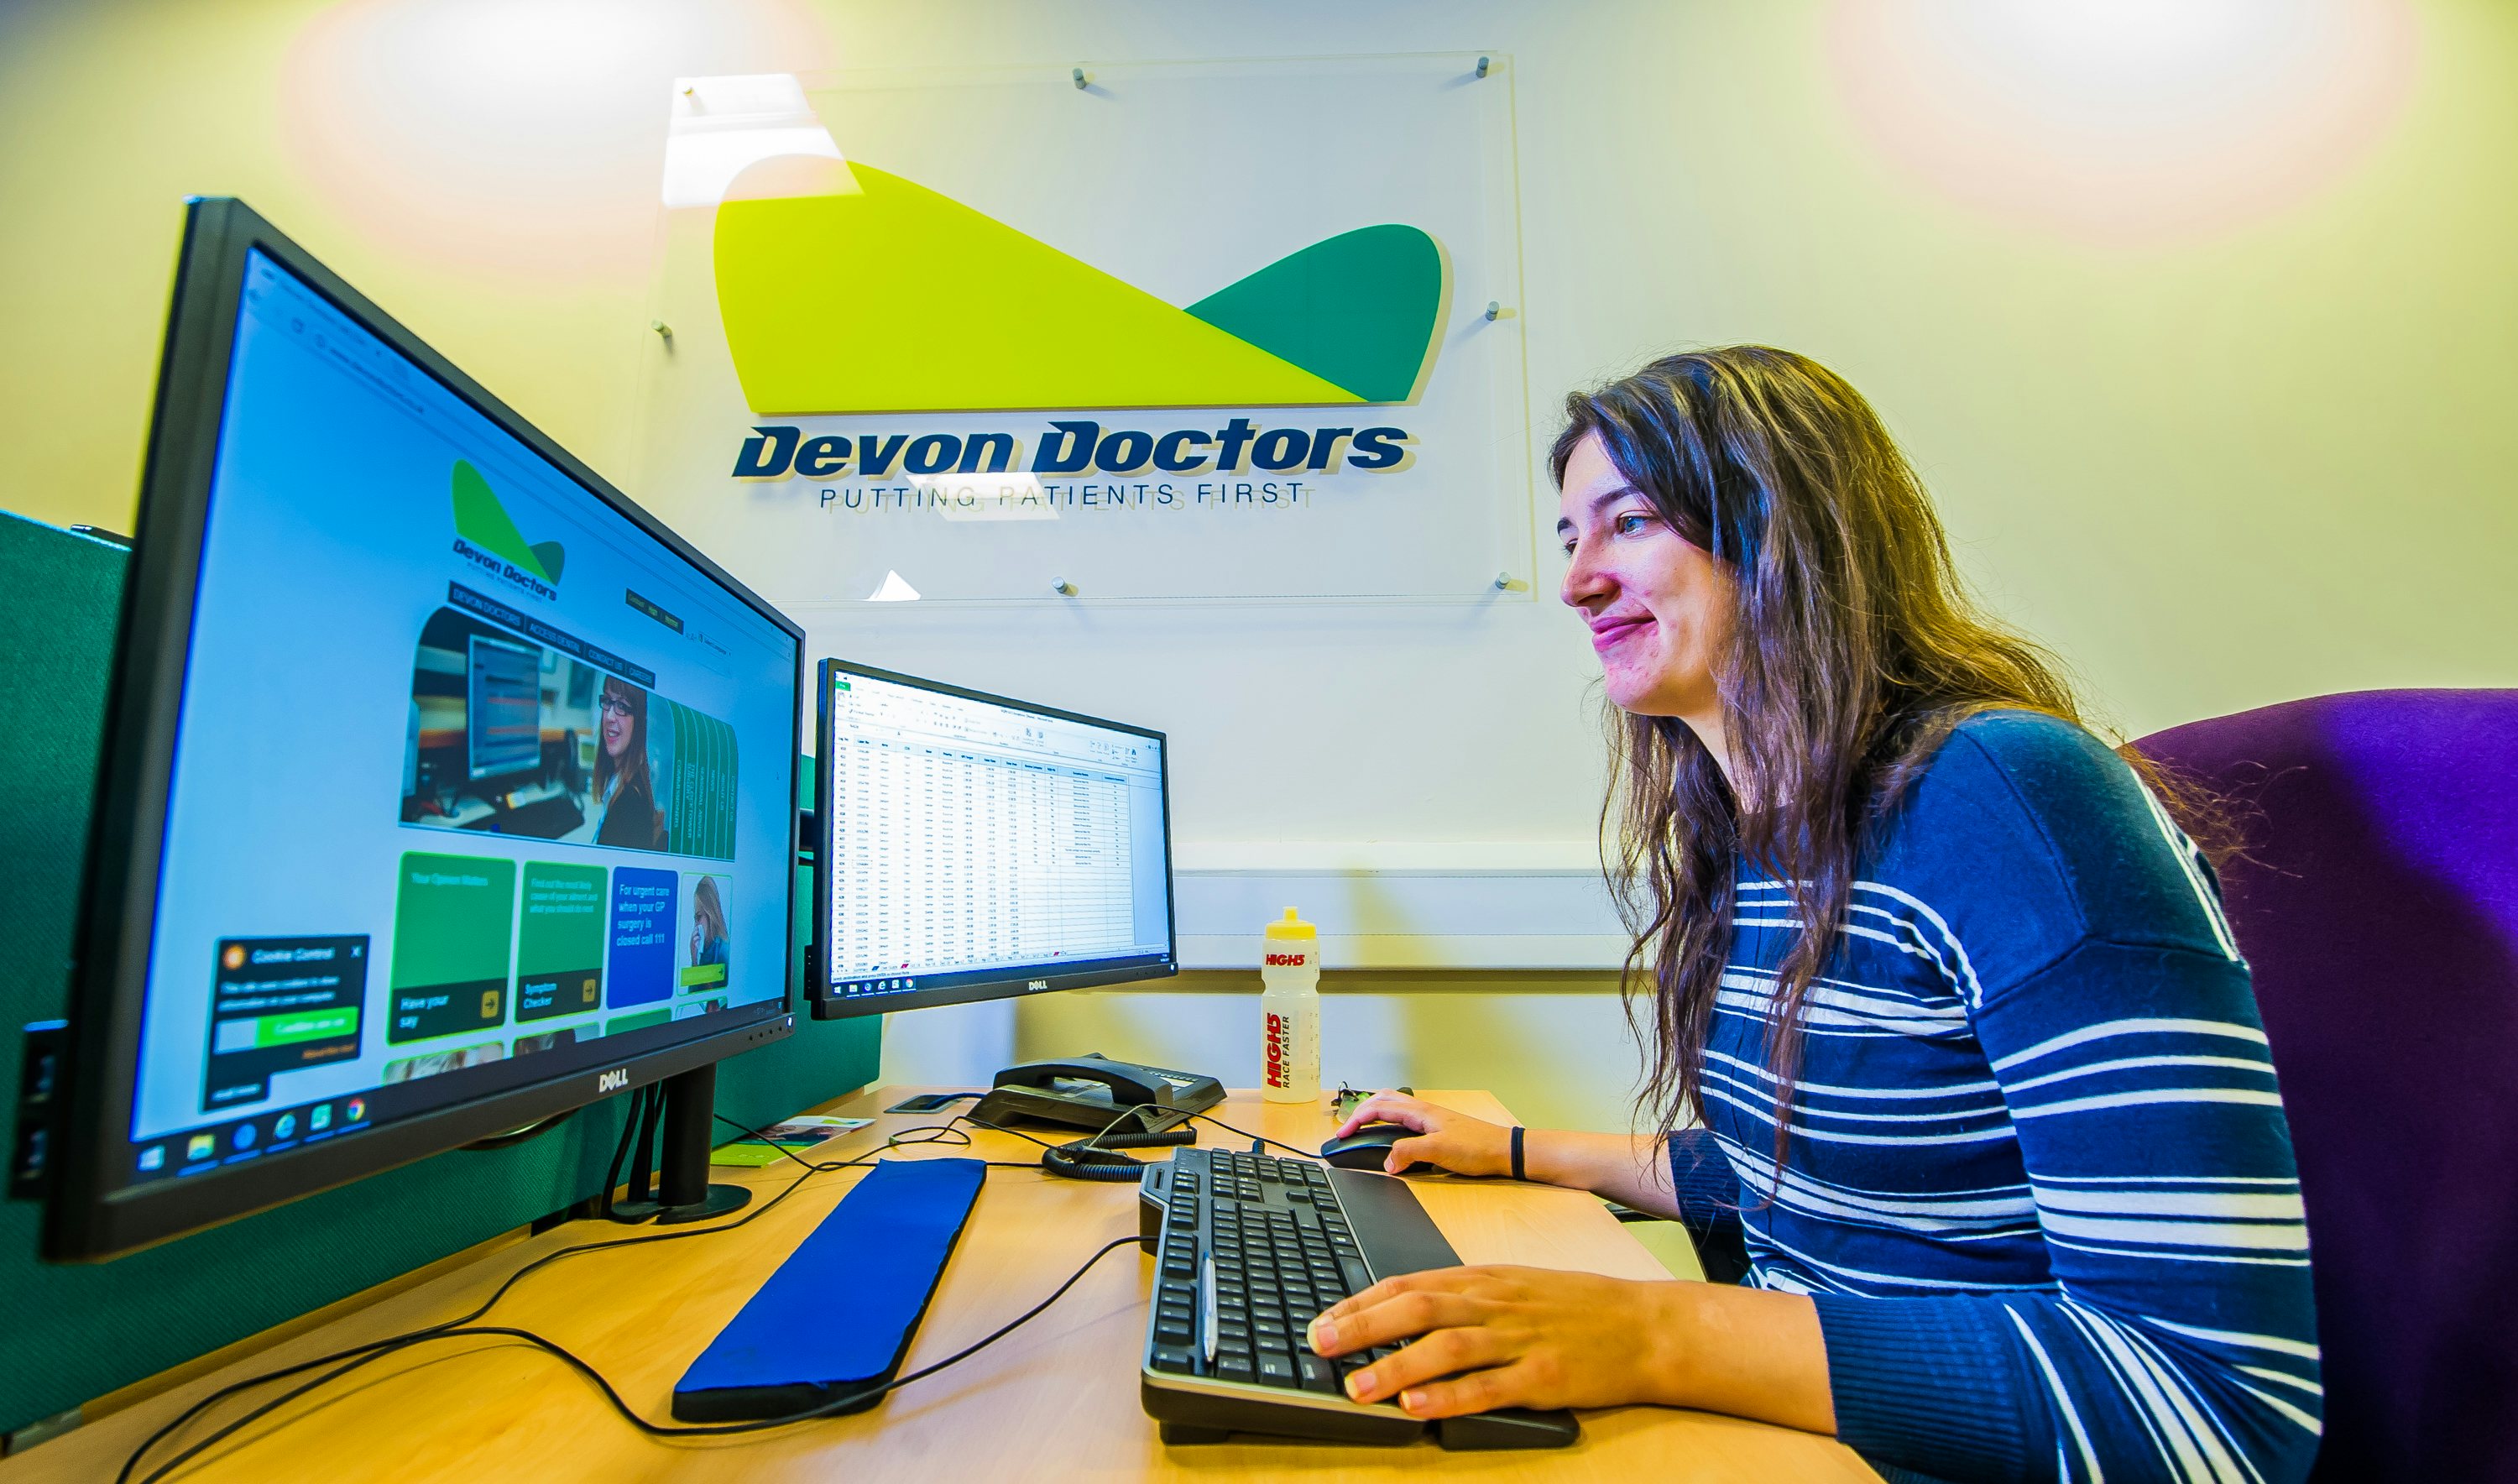 Devon Doctors